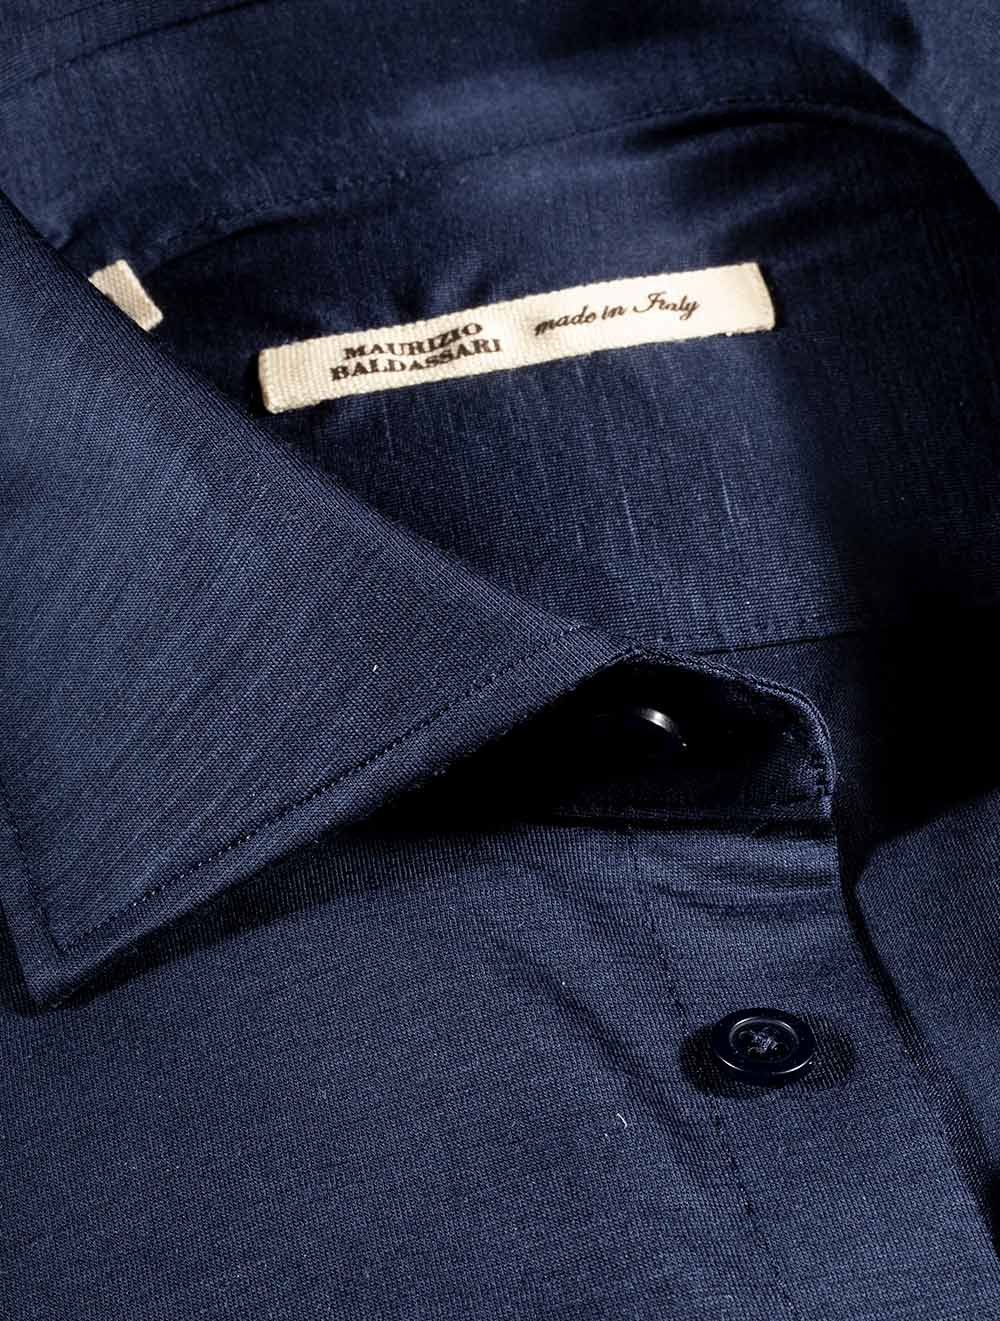 Maurizio Baldassari Jersey Spread Collar Shirt